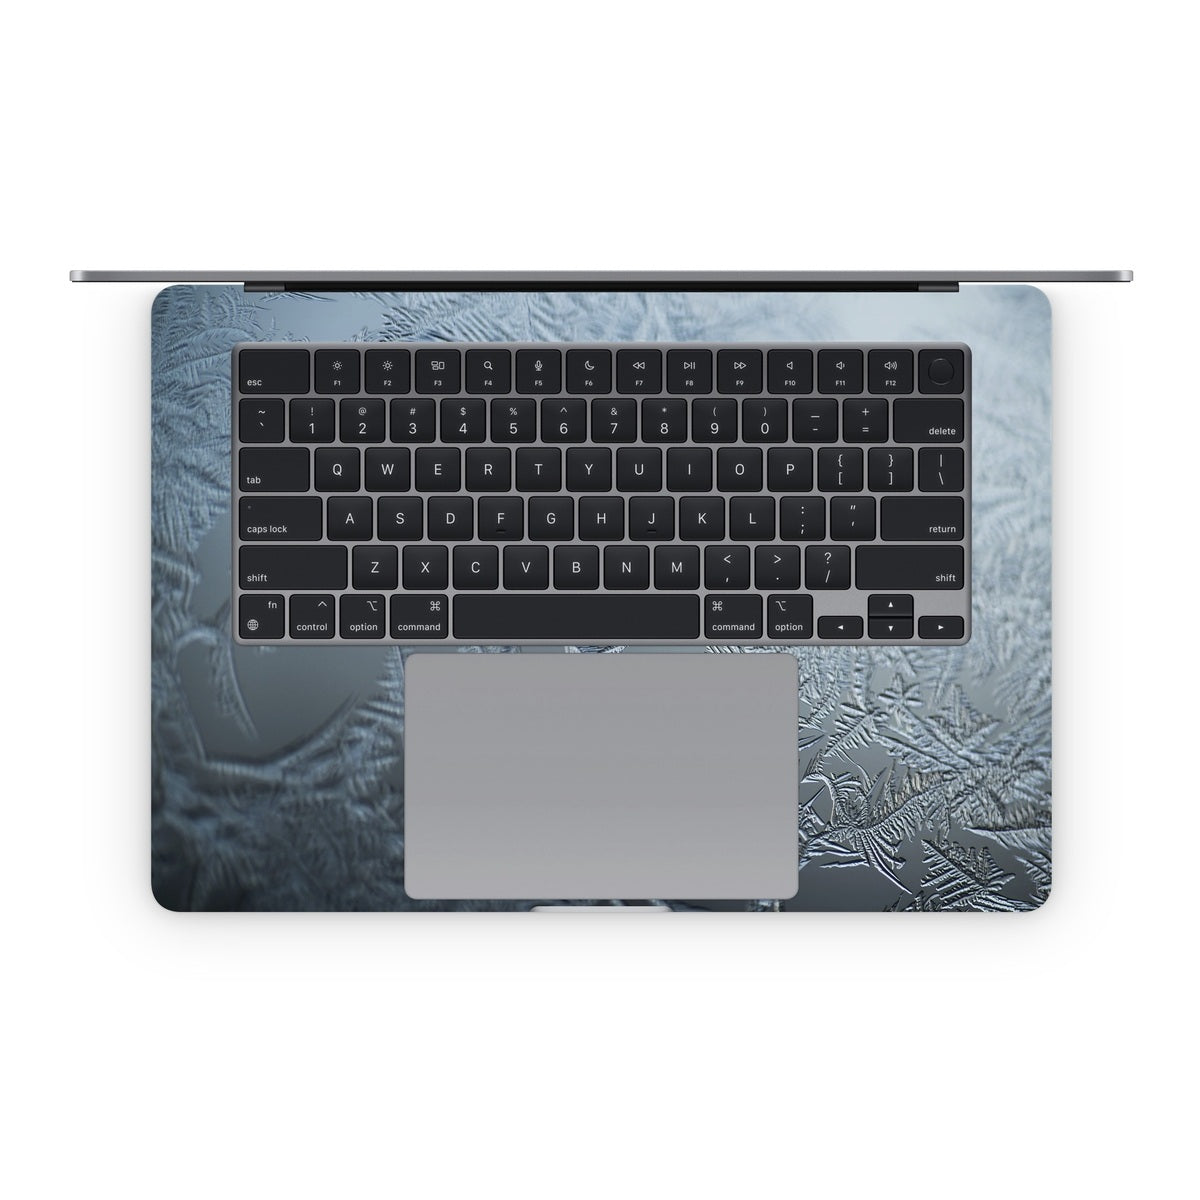 Icy - Apple MacBook Skin